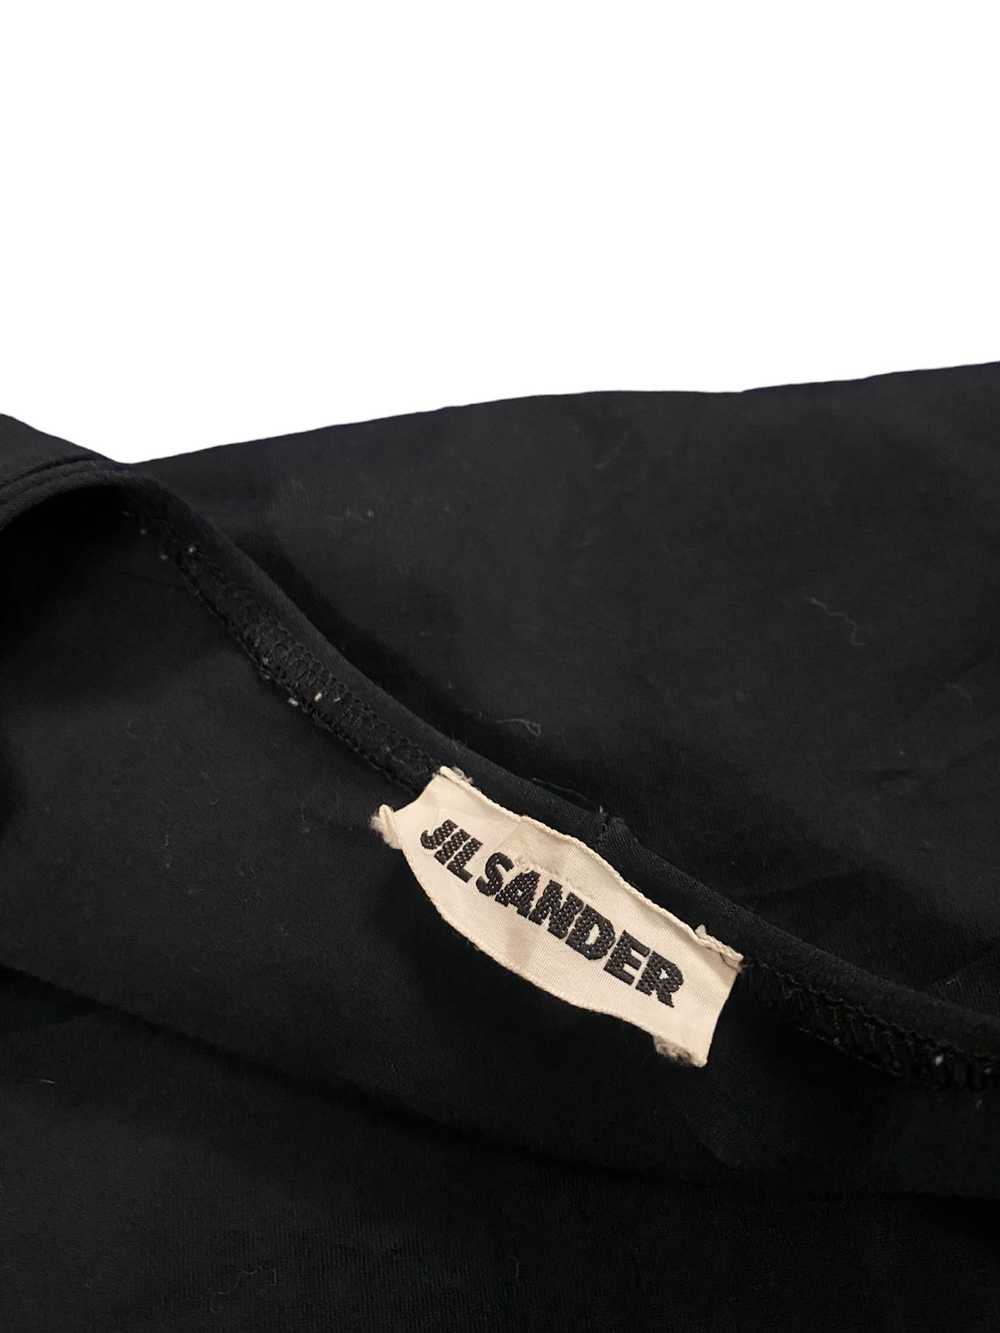 Jil Sander × Vintage Vintage Jil Sander Black Str… - image 6